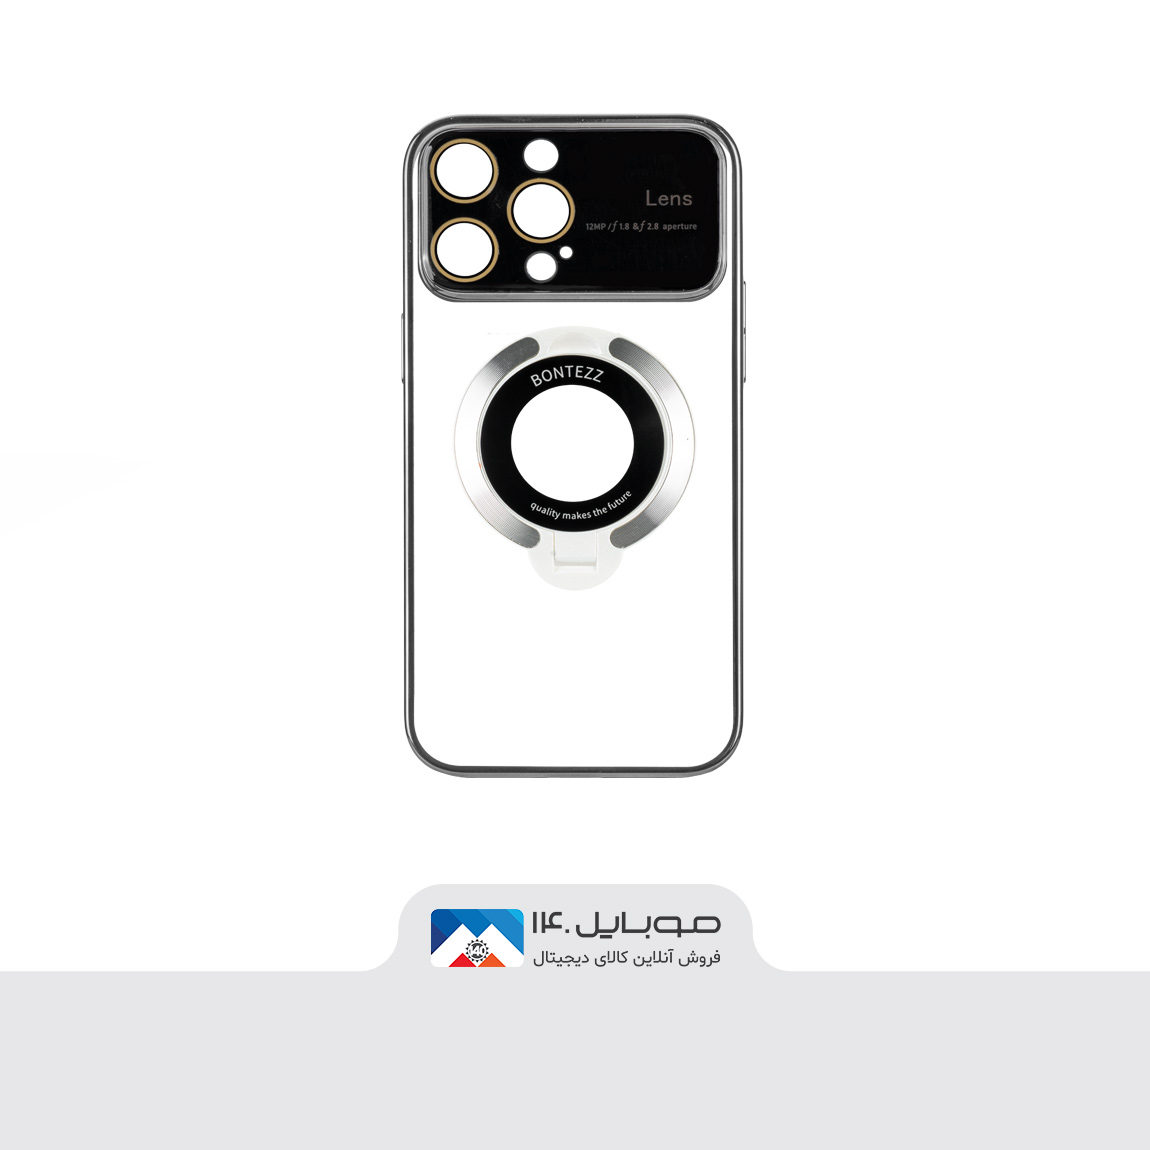 کاور بونتز استندشو مناسب برای گوشی اپل iPhone 12 Pro Max 2